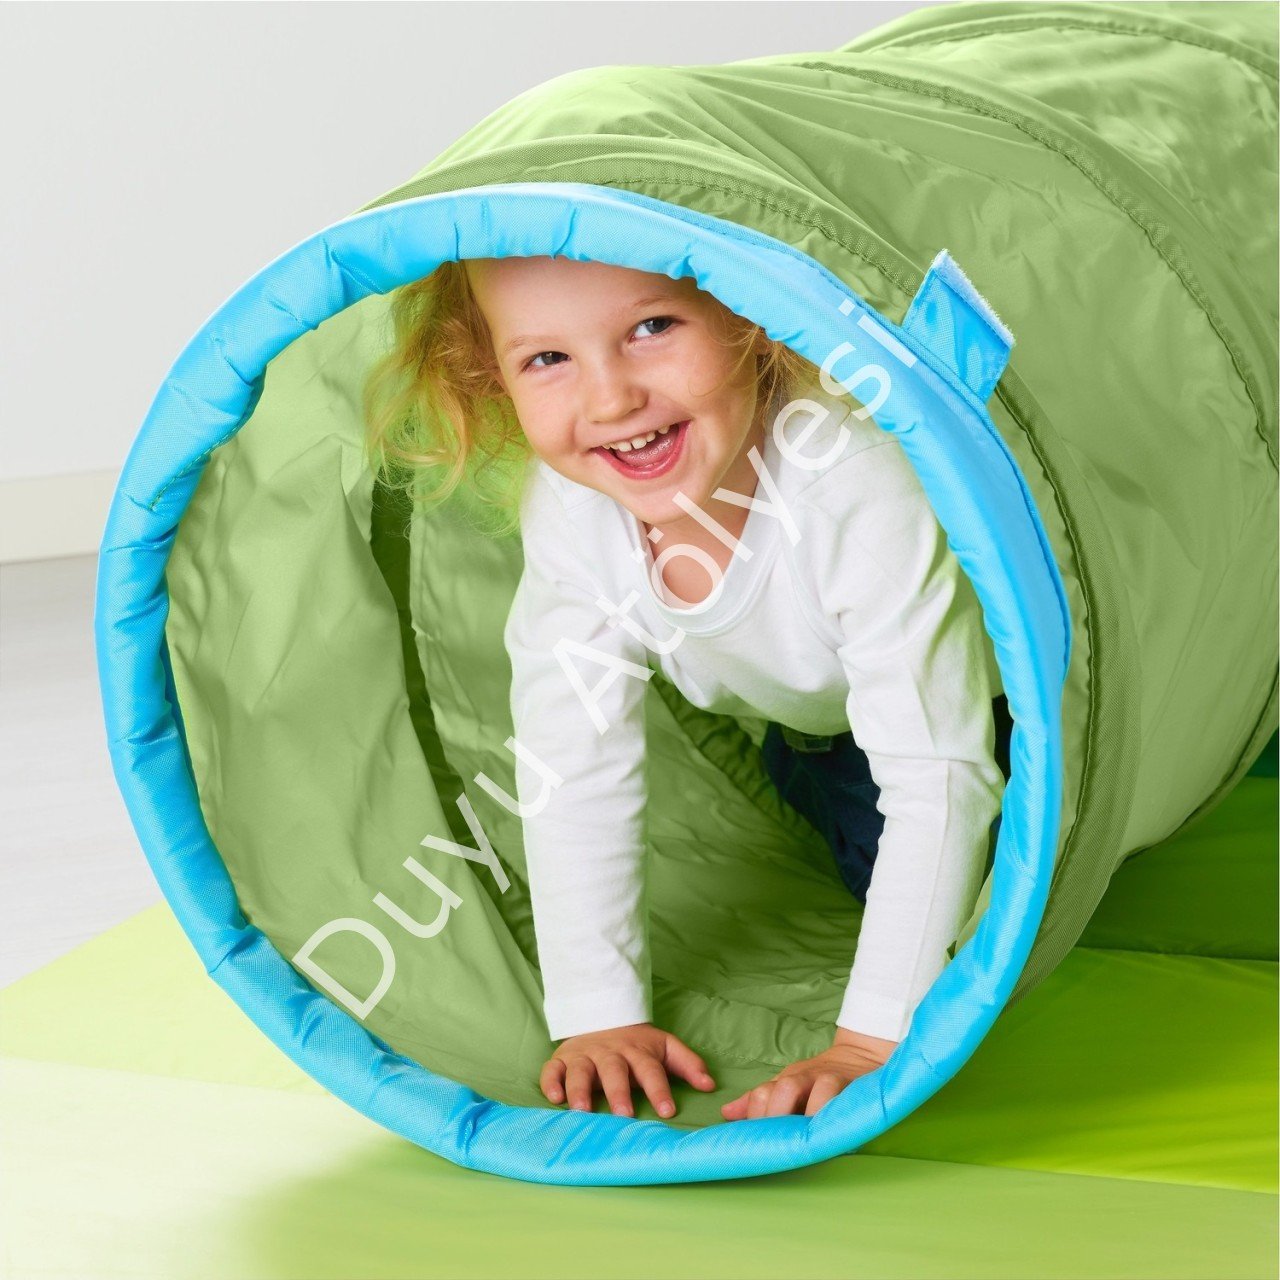 Çocuk Oyun Tüneli Akordiyon Model